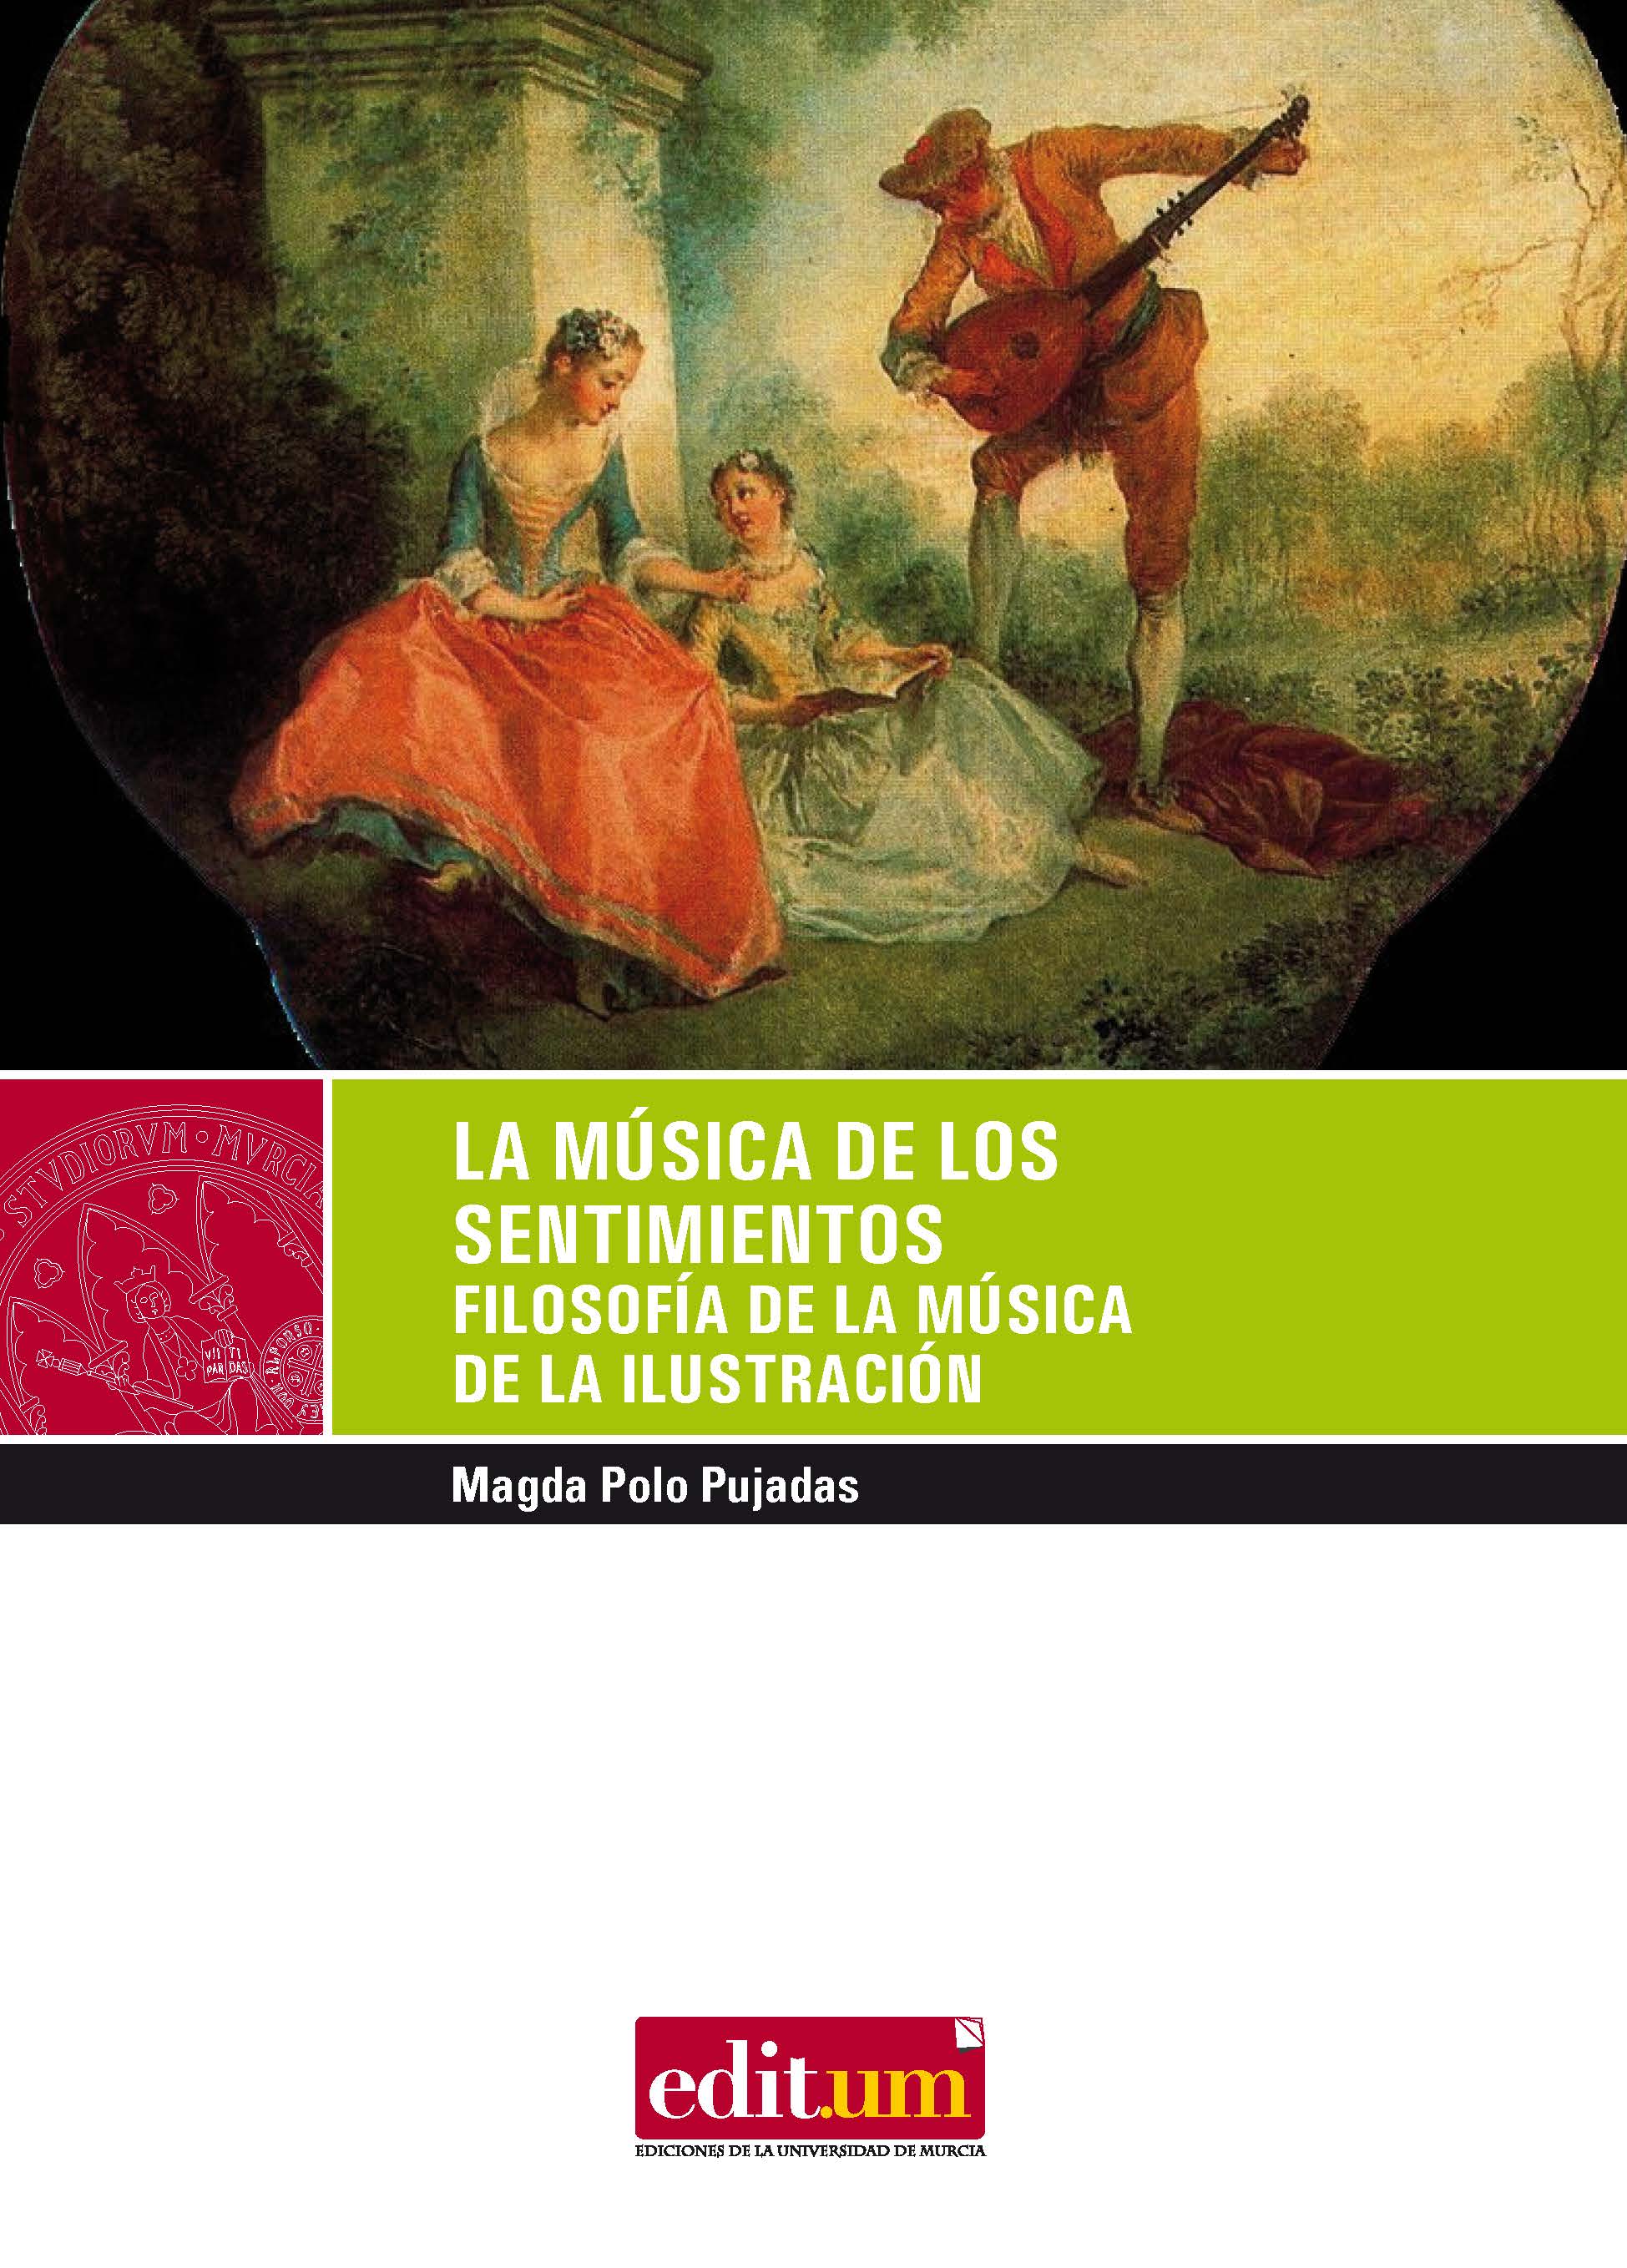 Imagen de portada del libro La Música de los sentimientos